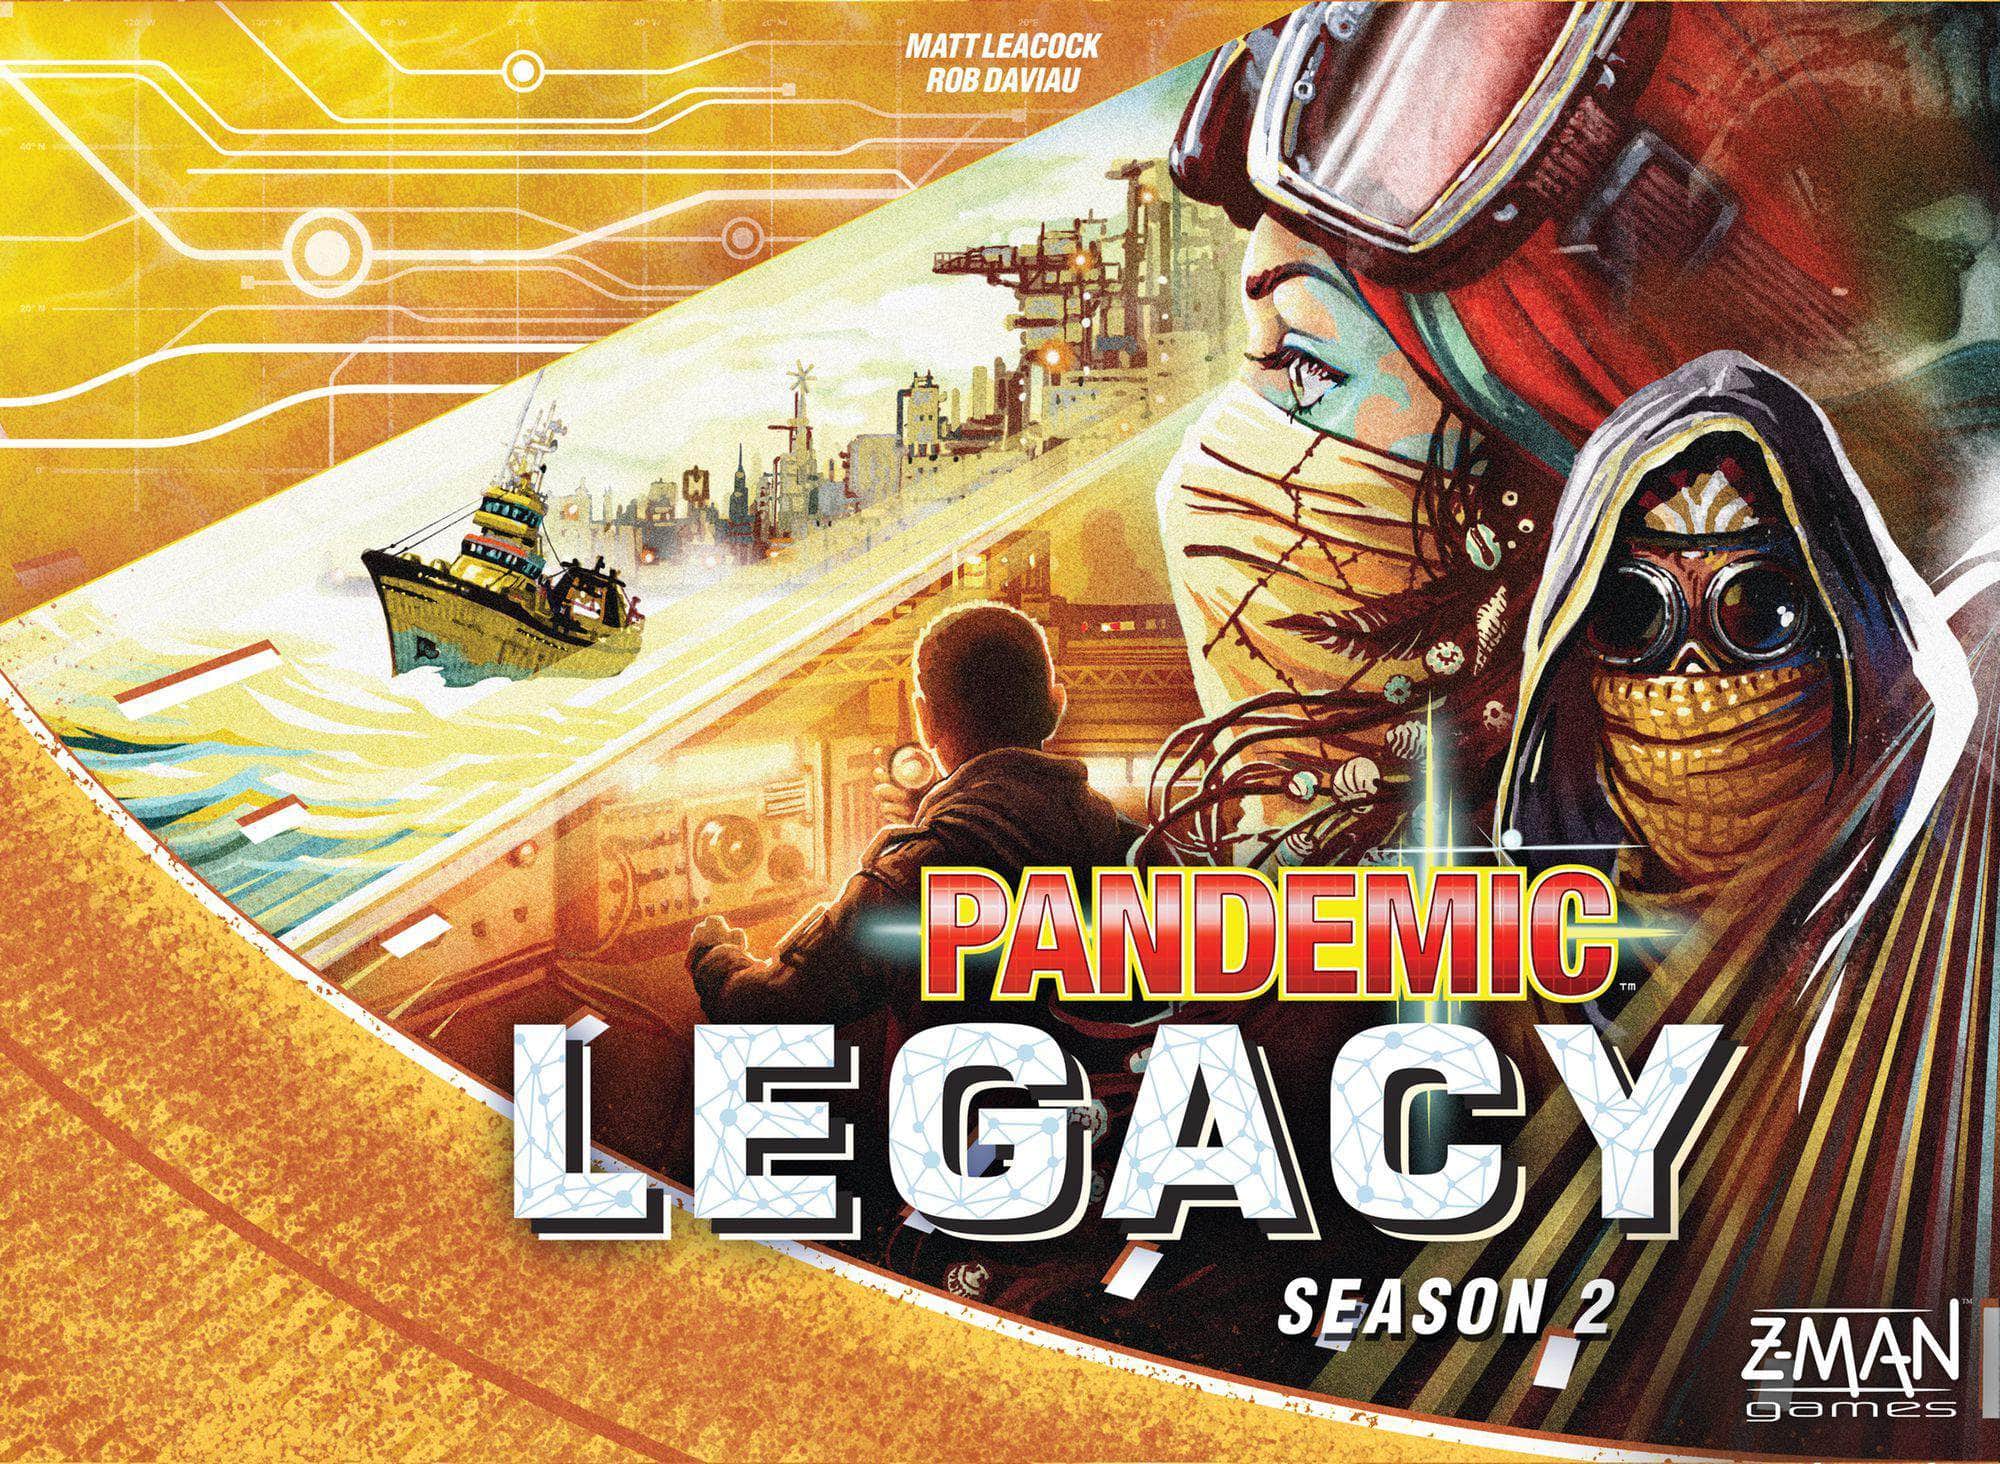 Pandemic Legacy: juegos de mesa minorista de la temporada 2, juegos Z-Man, Asmodee, Devir, Hobby Japan, Corea BoardGames Co., Lacerta, Lifestyle BoardGames KS800537A